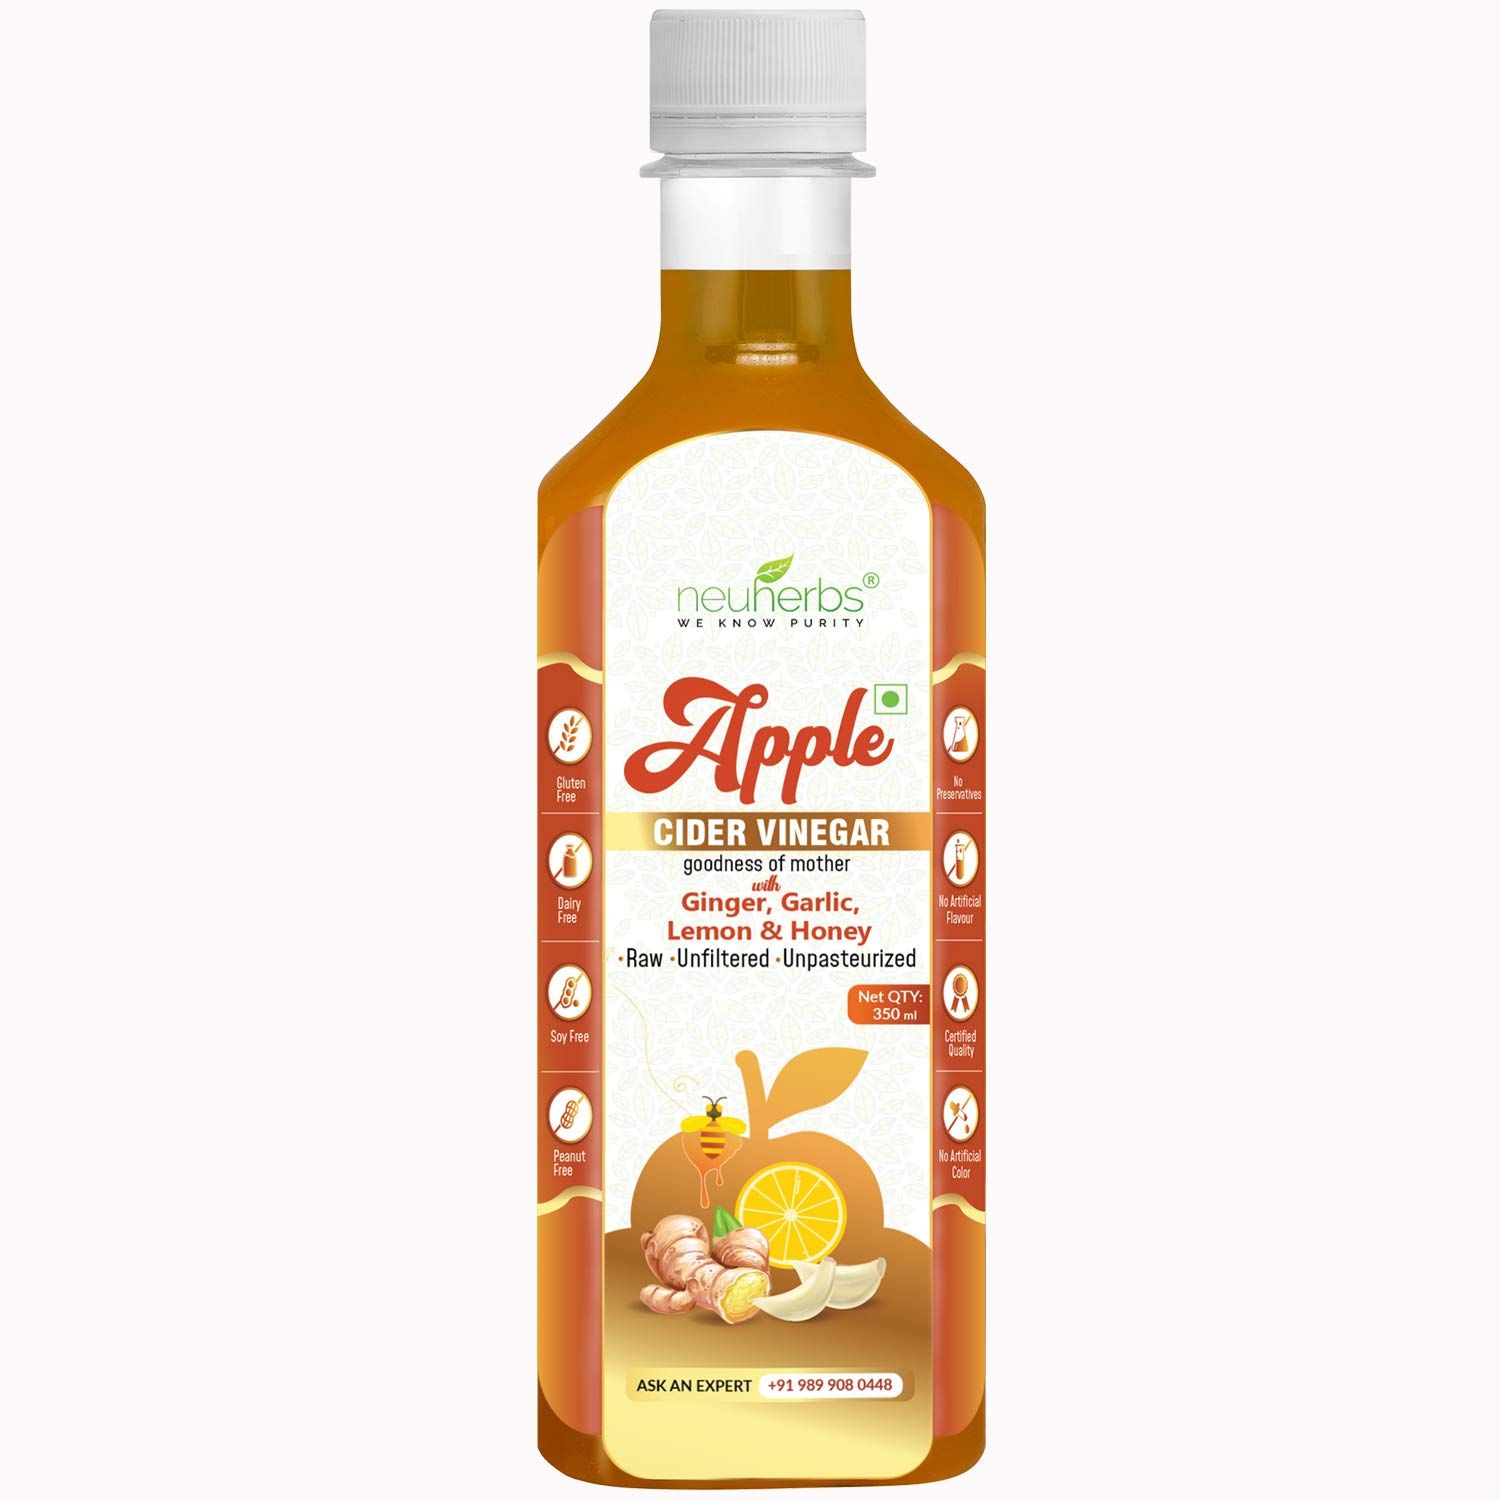 Neuherbs Apple Cider Vinegar with Ginger Garlic Lemon & Honey Image